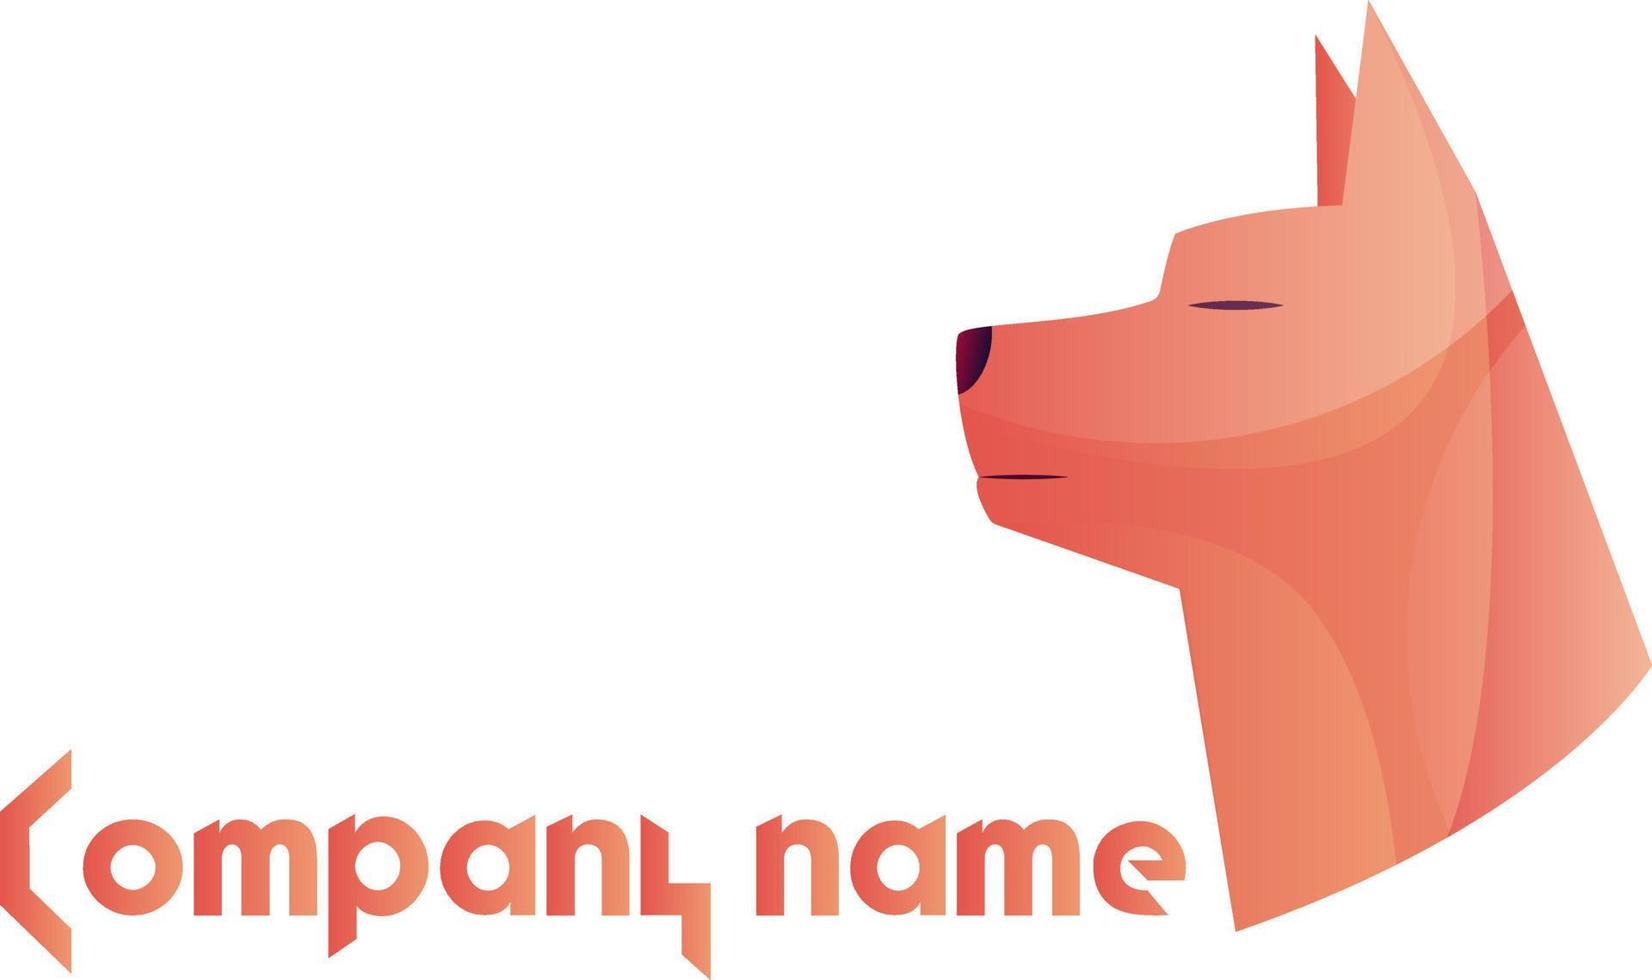 Rosa Hundekopf-Logo-Vektorillustration auf weißem Hintergrund vektor